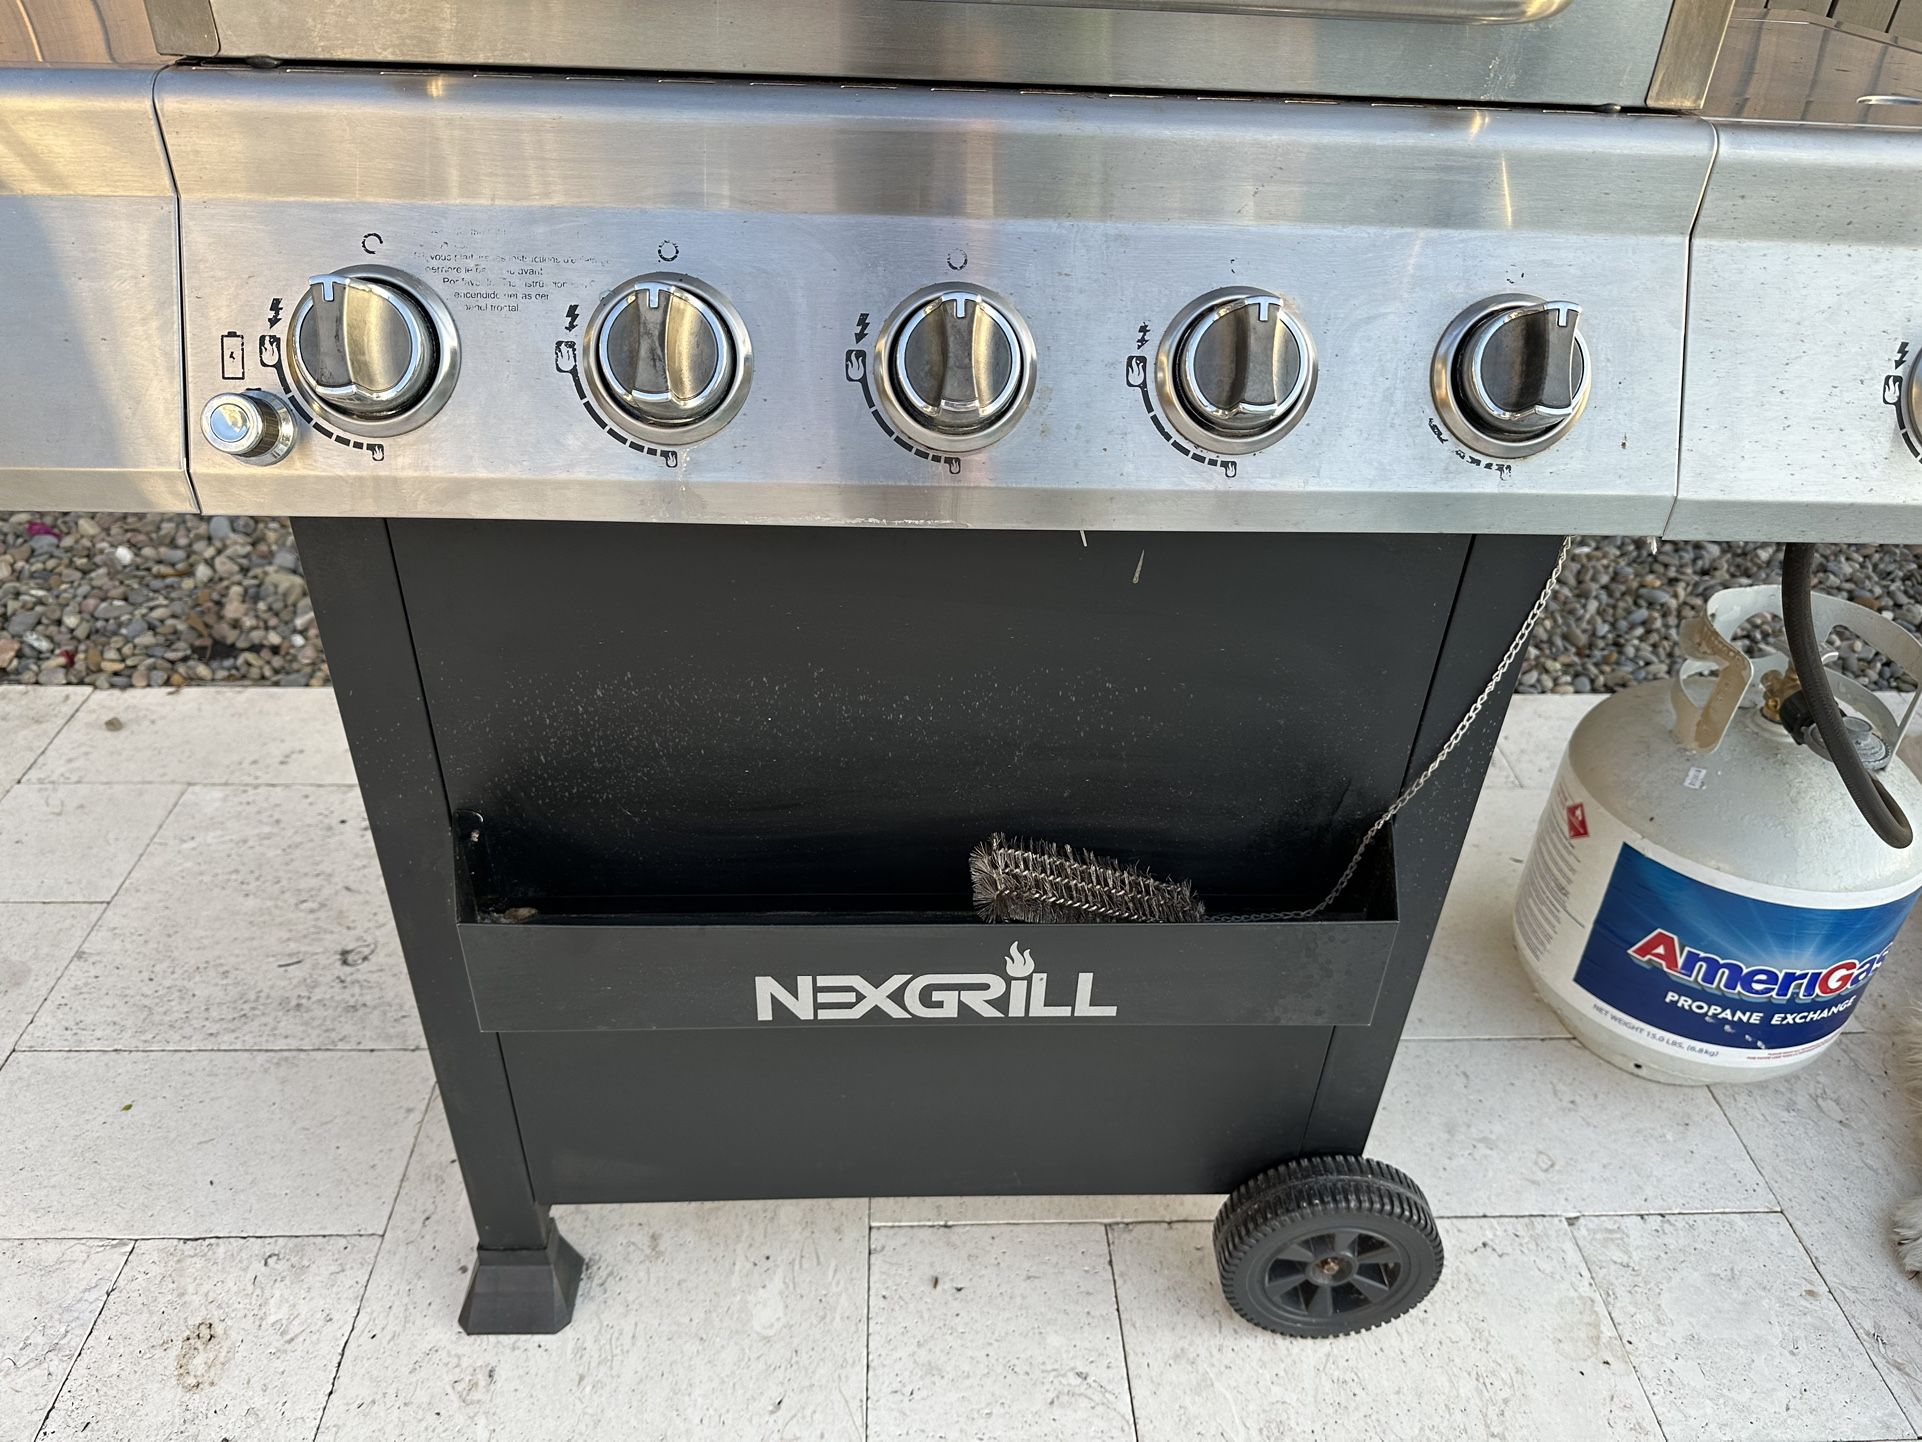 Nexgrill Grill With Cover 